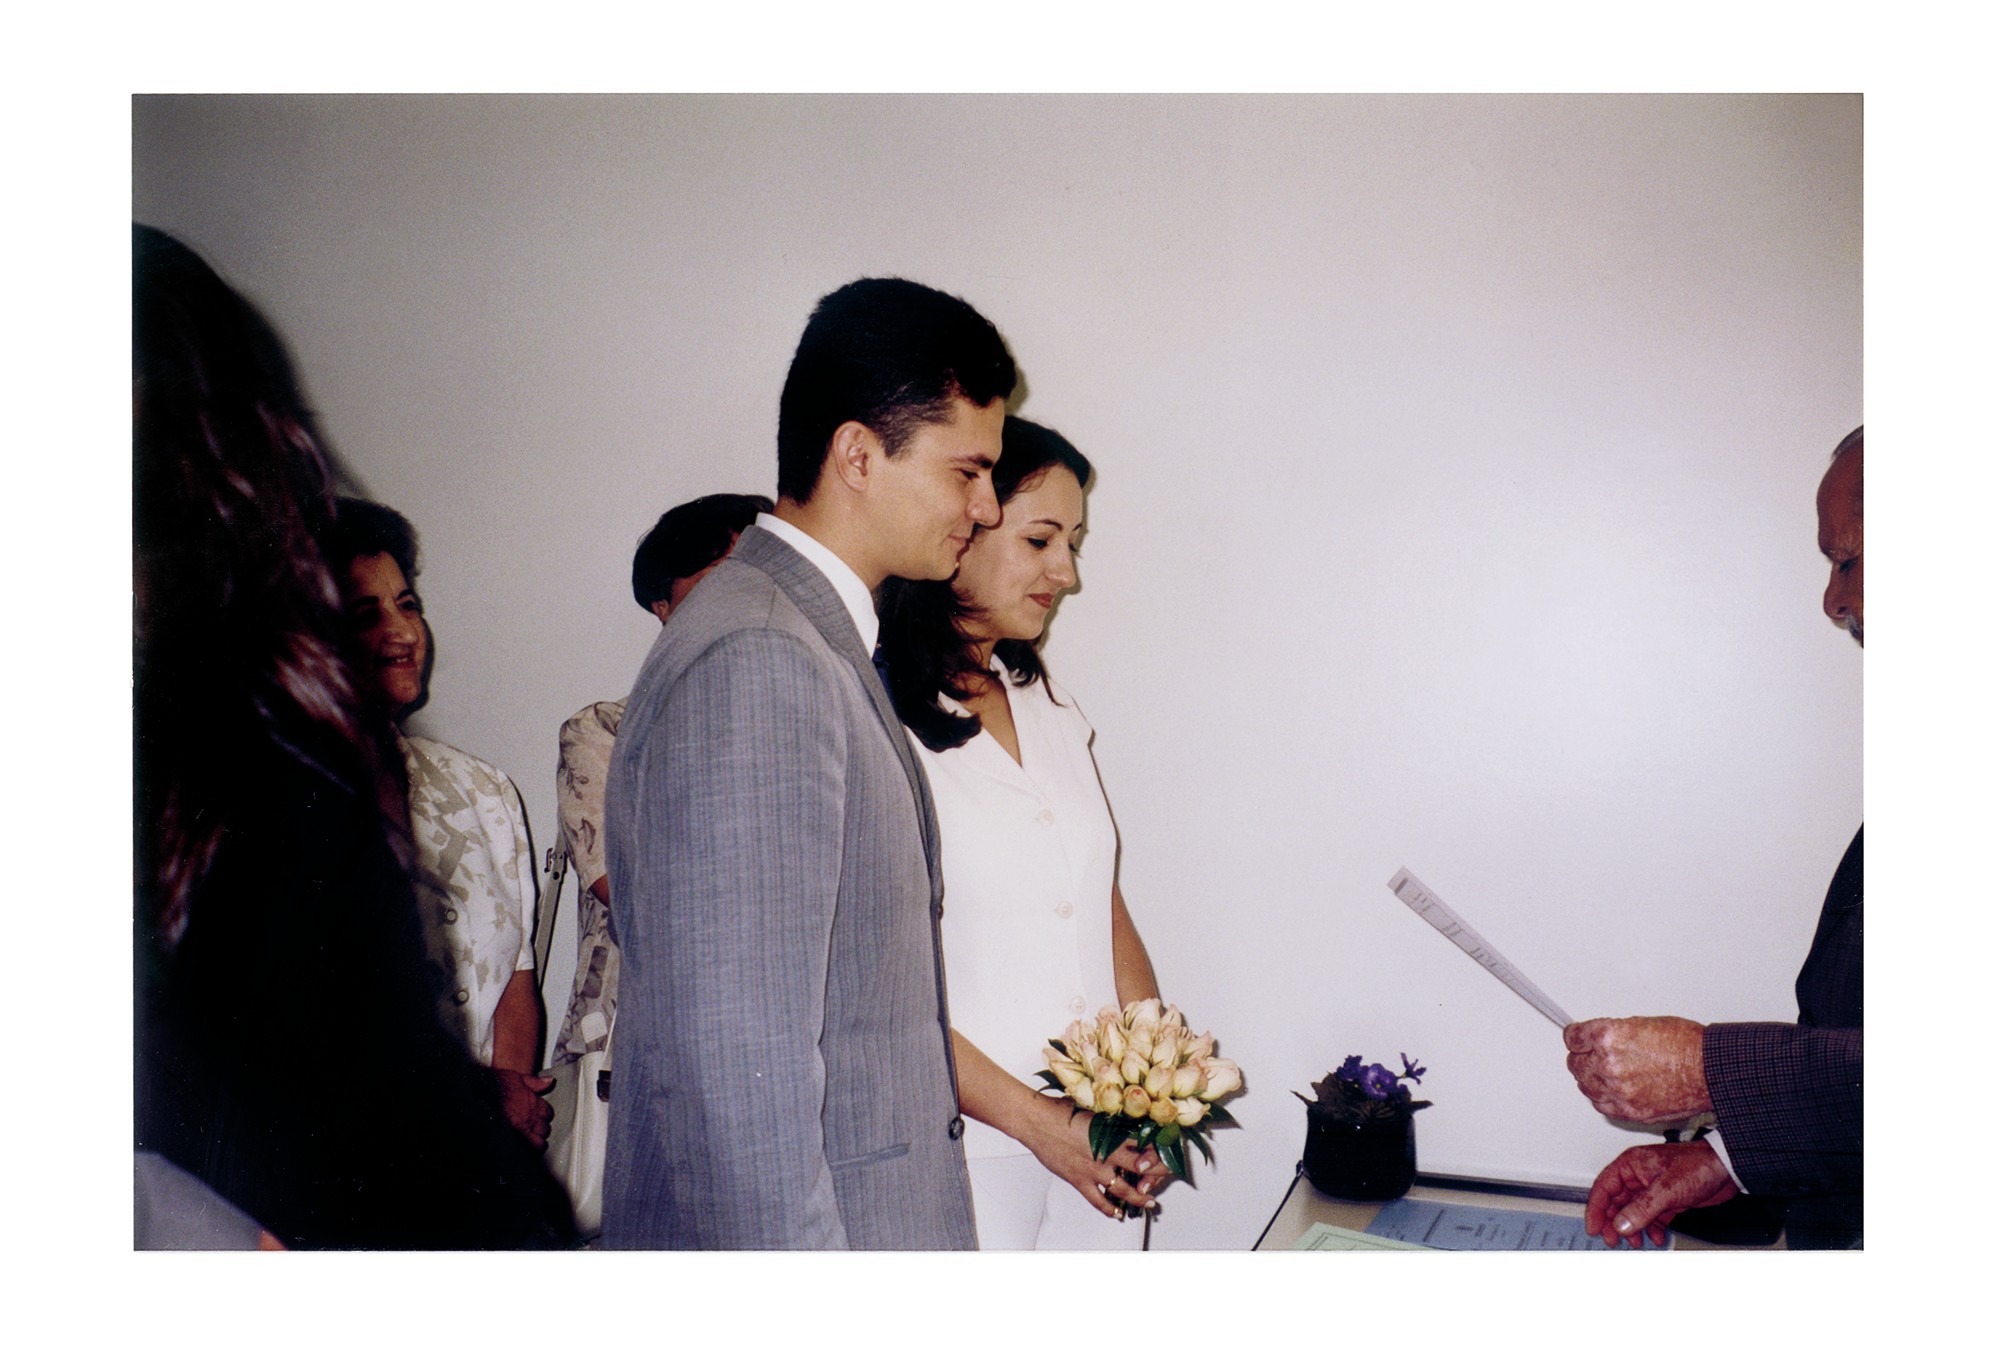 O casamento civil de Rosangela e Sergio Moro, em 4 de dezembro de 1998 (Foto: Arquivo pessoal)